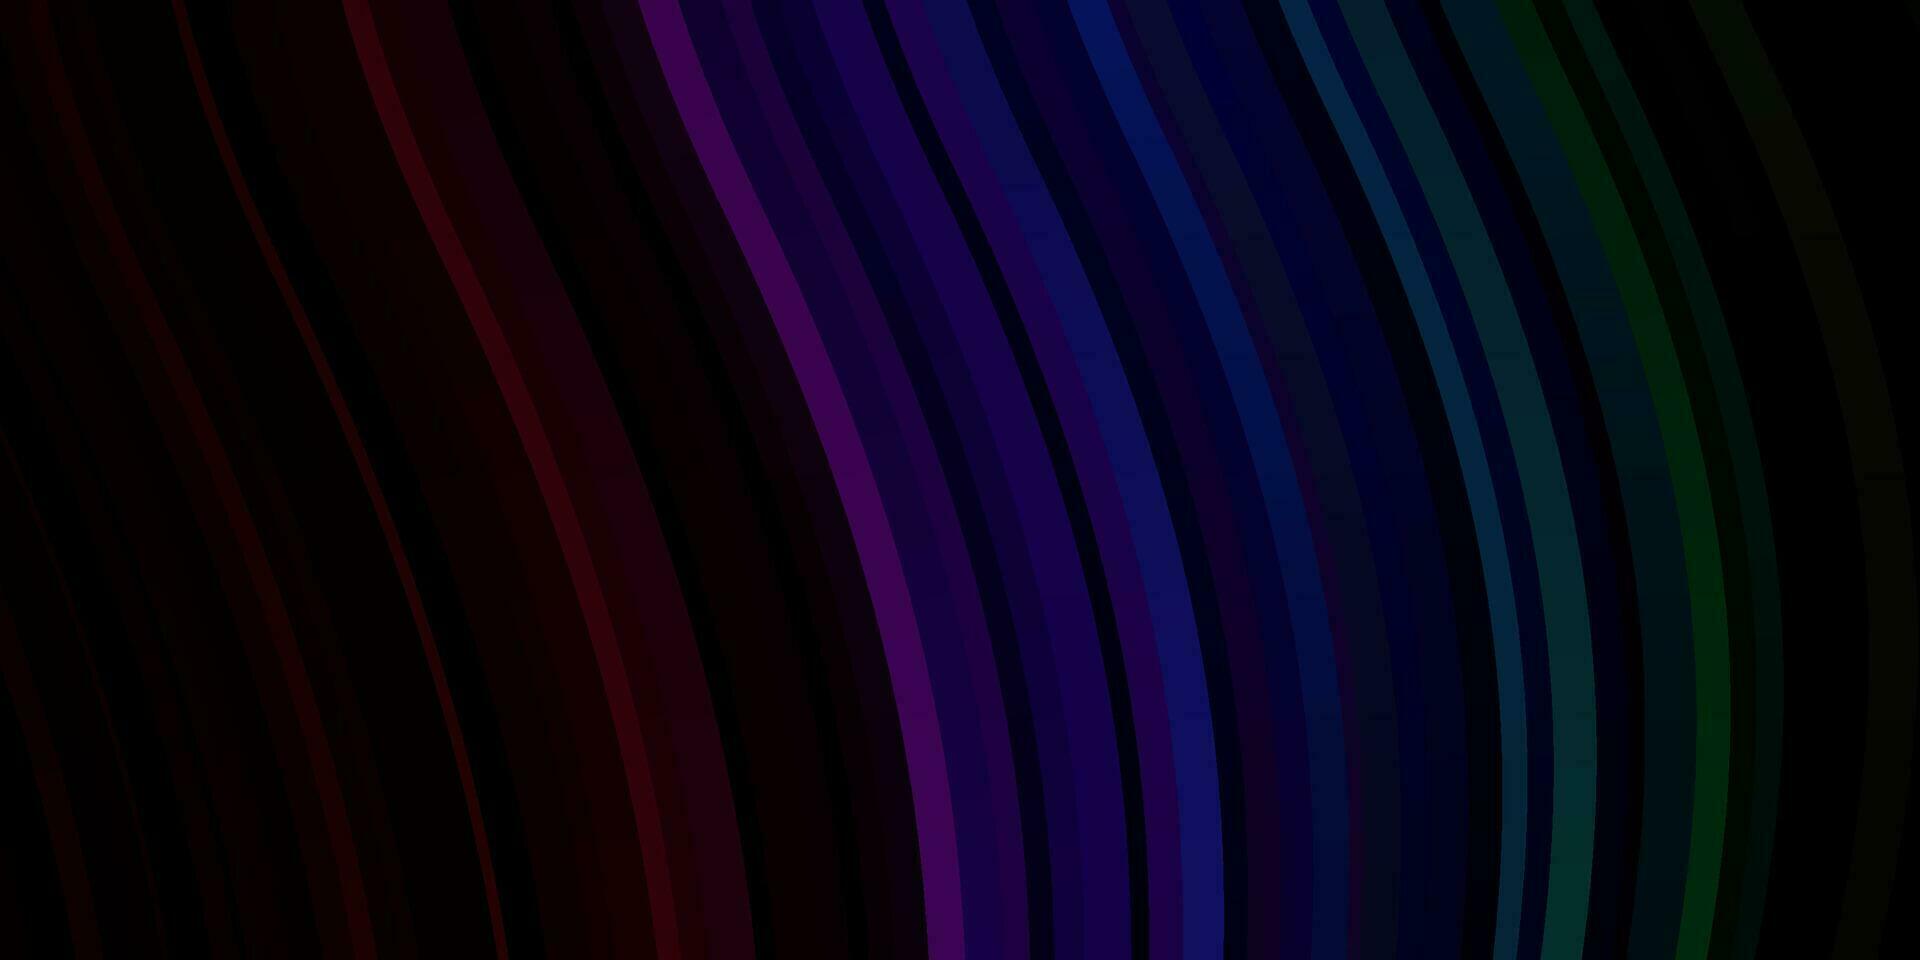 donkere veelkleurige vector sjabloon met gebogen lijnen.